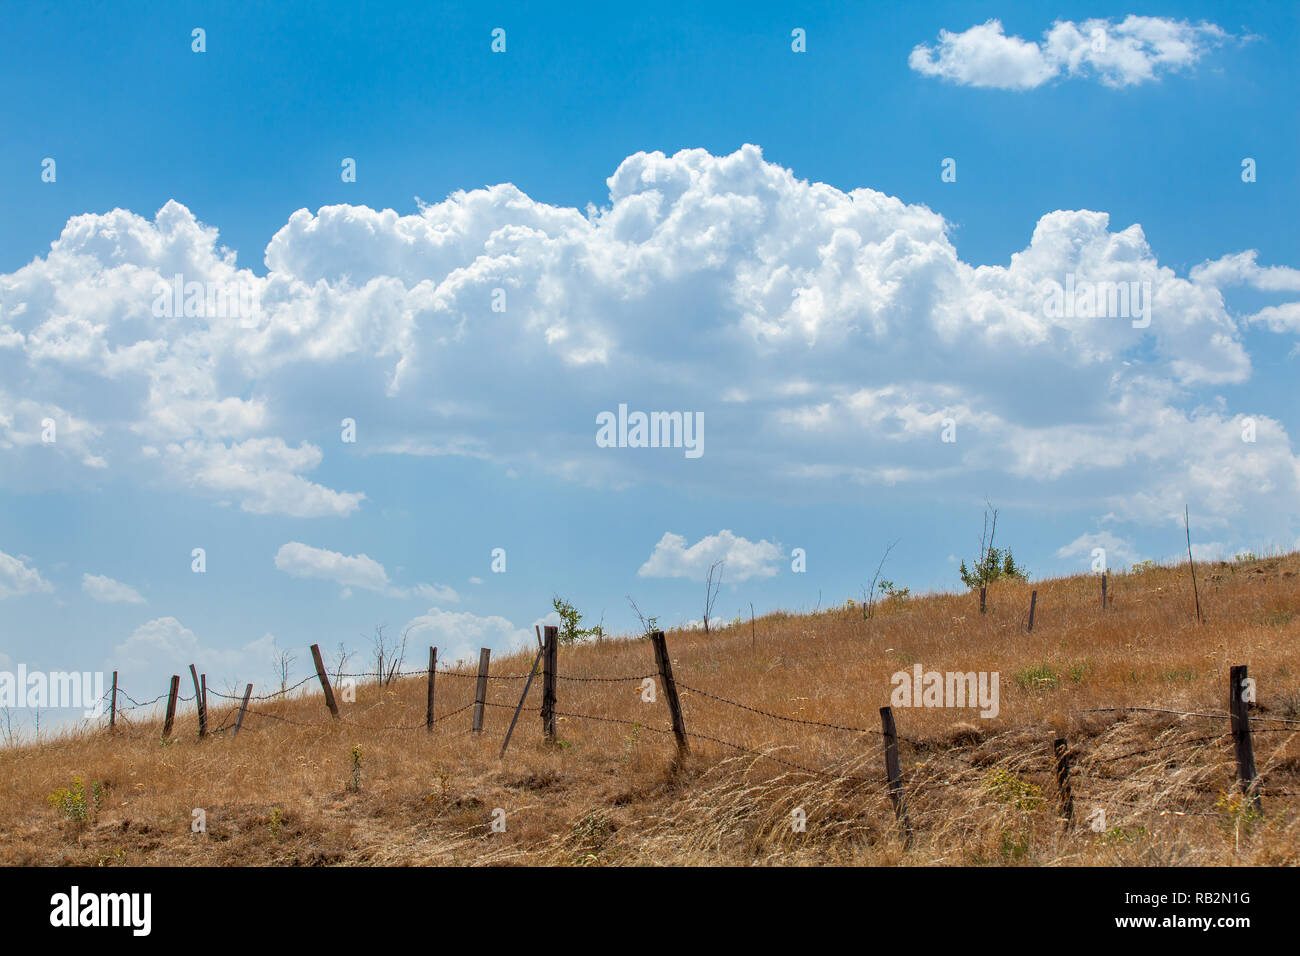 Stacheldraht Fenceline auf Bauernhof mit einem blauen Himmel Stockfoto